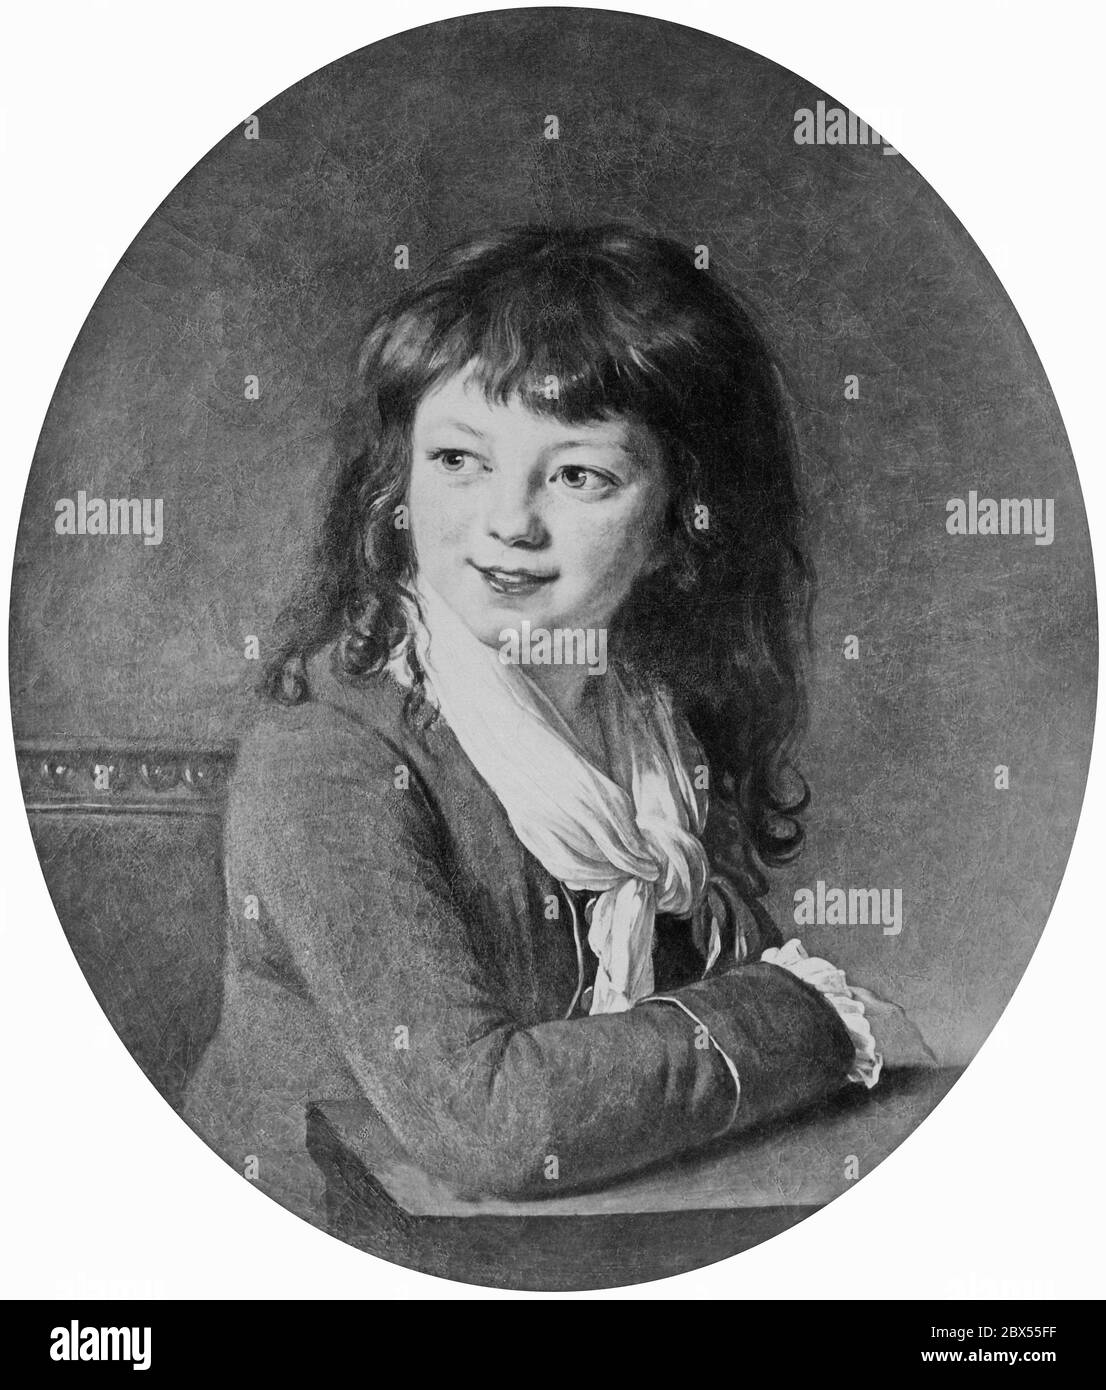 Portrait d'un garçon à poil long, basé sur un tableau d'Elisabeth Vigee-Lebrun. Photographie non datée, env. 1900. Banque D'Images